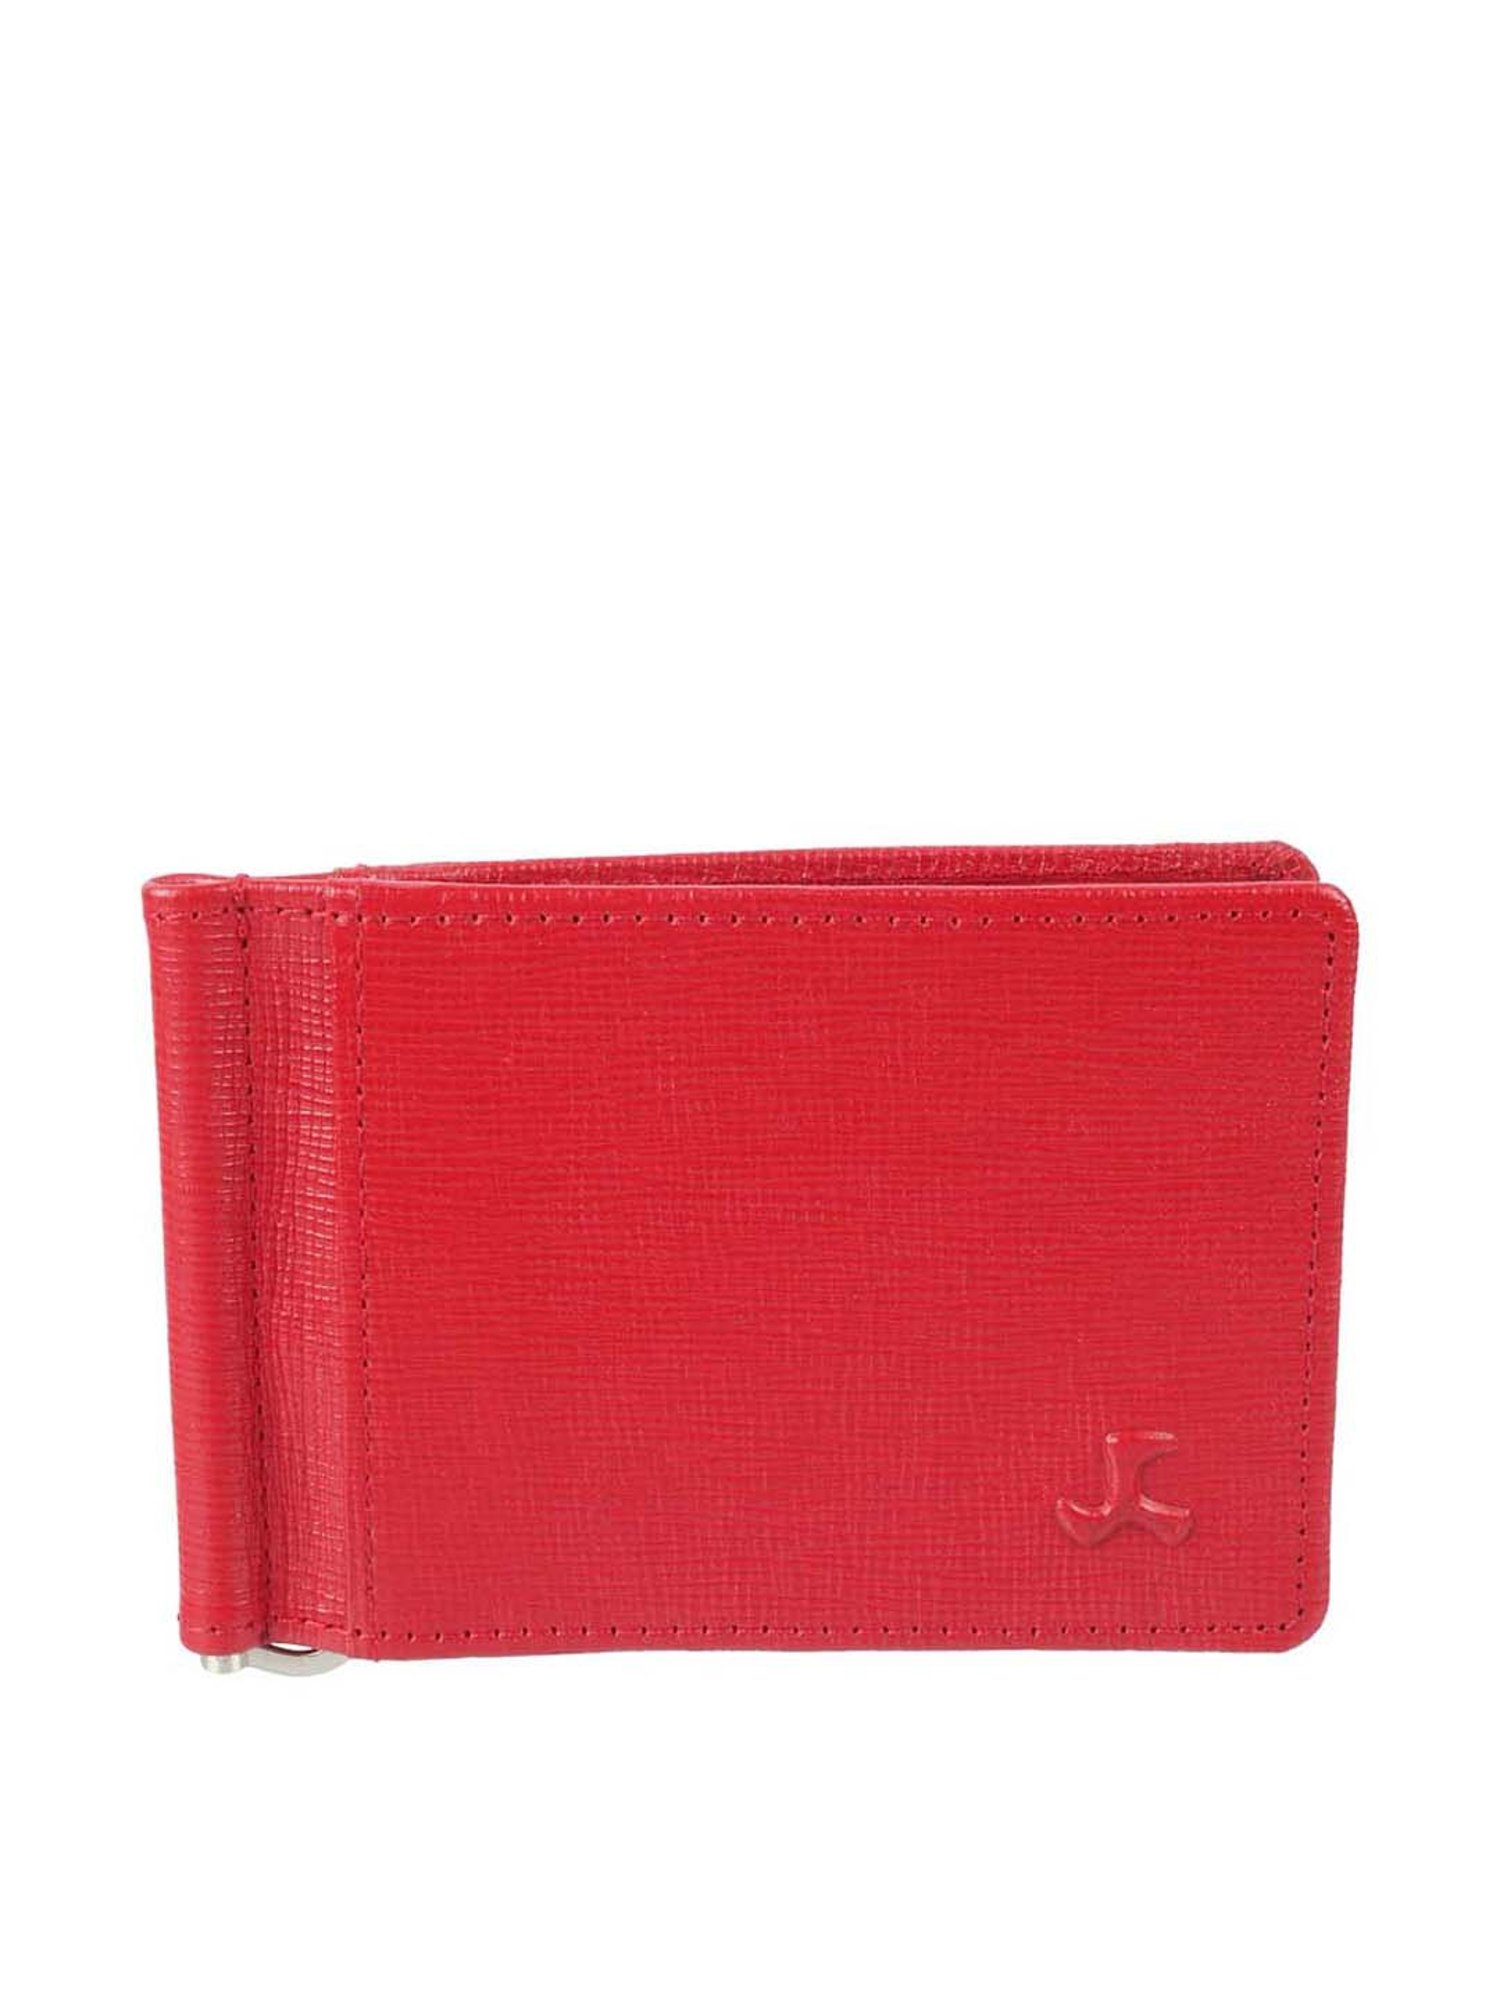 Men Cardholder Billfold Genuine Leather Dark Red Wallet Bifold Purse  Moneyfold | eBay